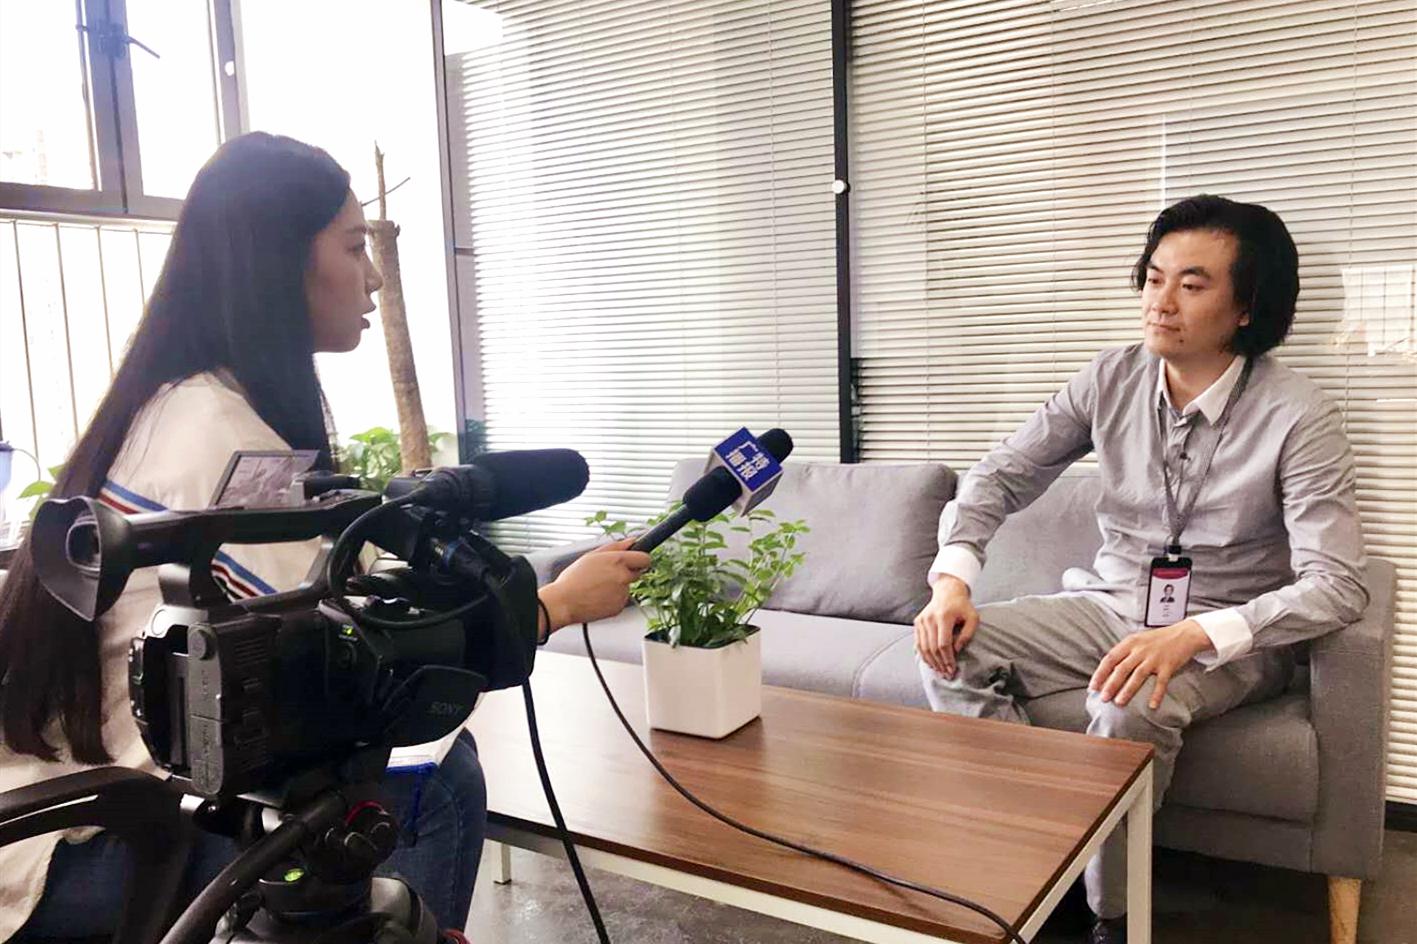 上海第一财经采访未石互动ceo李林:文化 科技融合发展